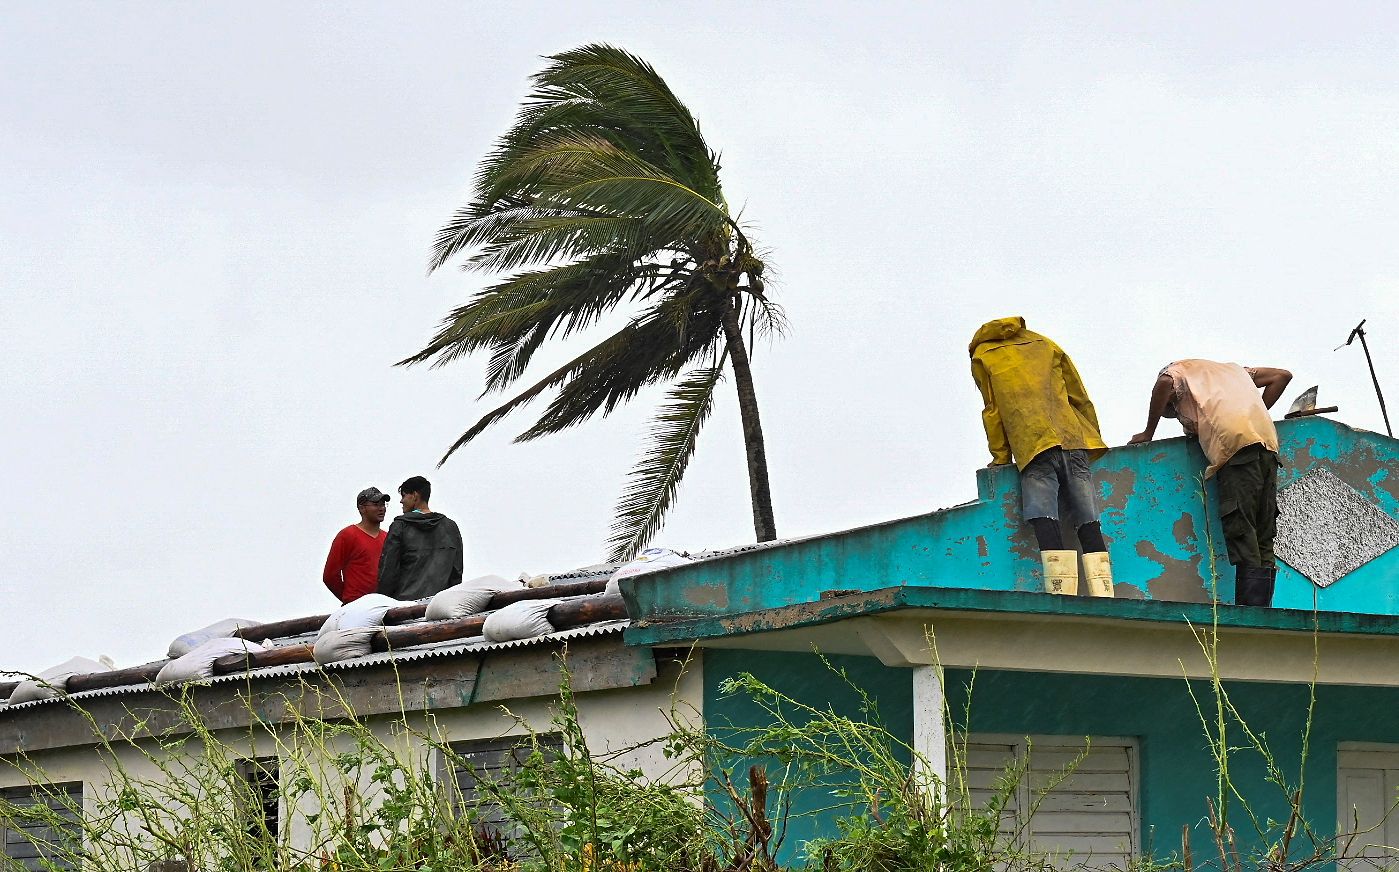 Cubanos reparan un techo en San Juan y Martínez, provincia de Pinar del Río, el 27 de septiembre de 2022 tras el paso del huracán Ian. (Foto de ADALBERTO ROQUE / AFP)